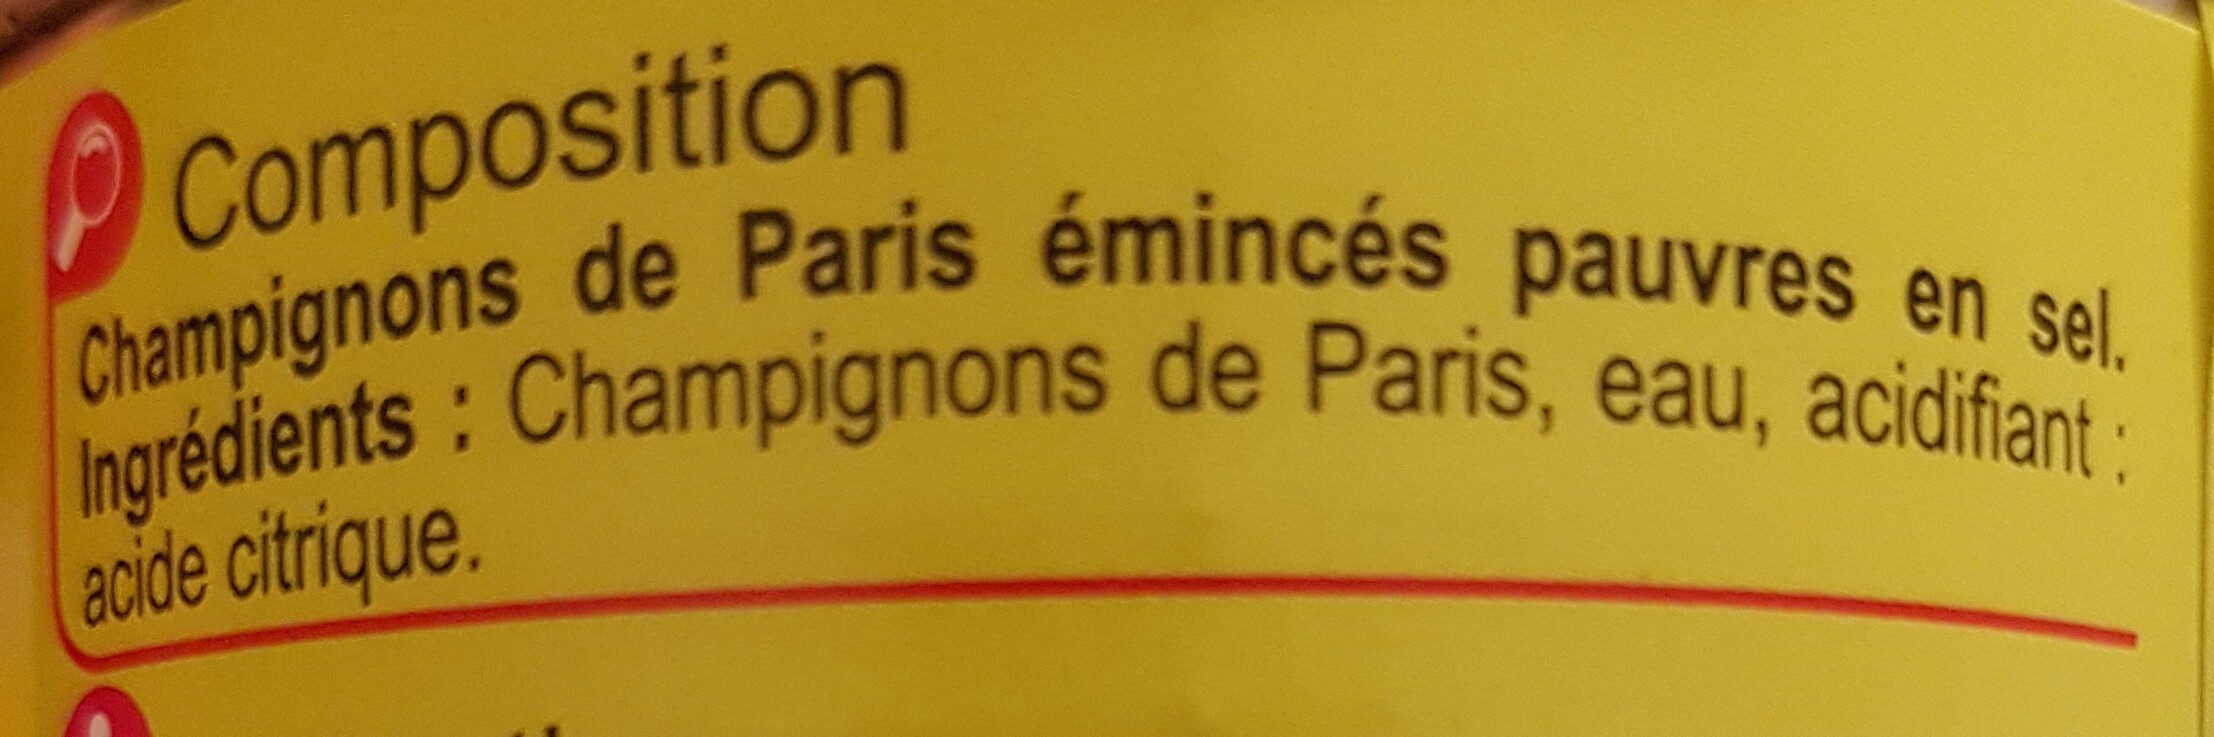 Champignons de Paris Emincés - Ingrédients